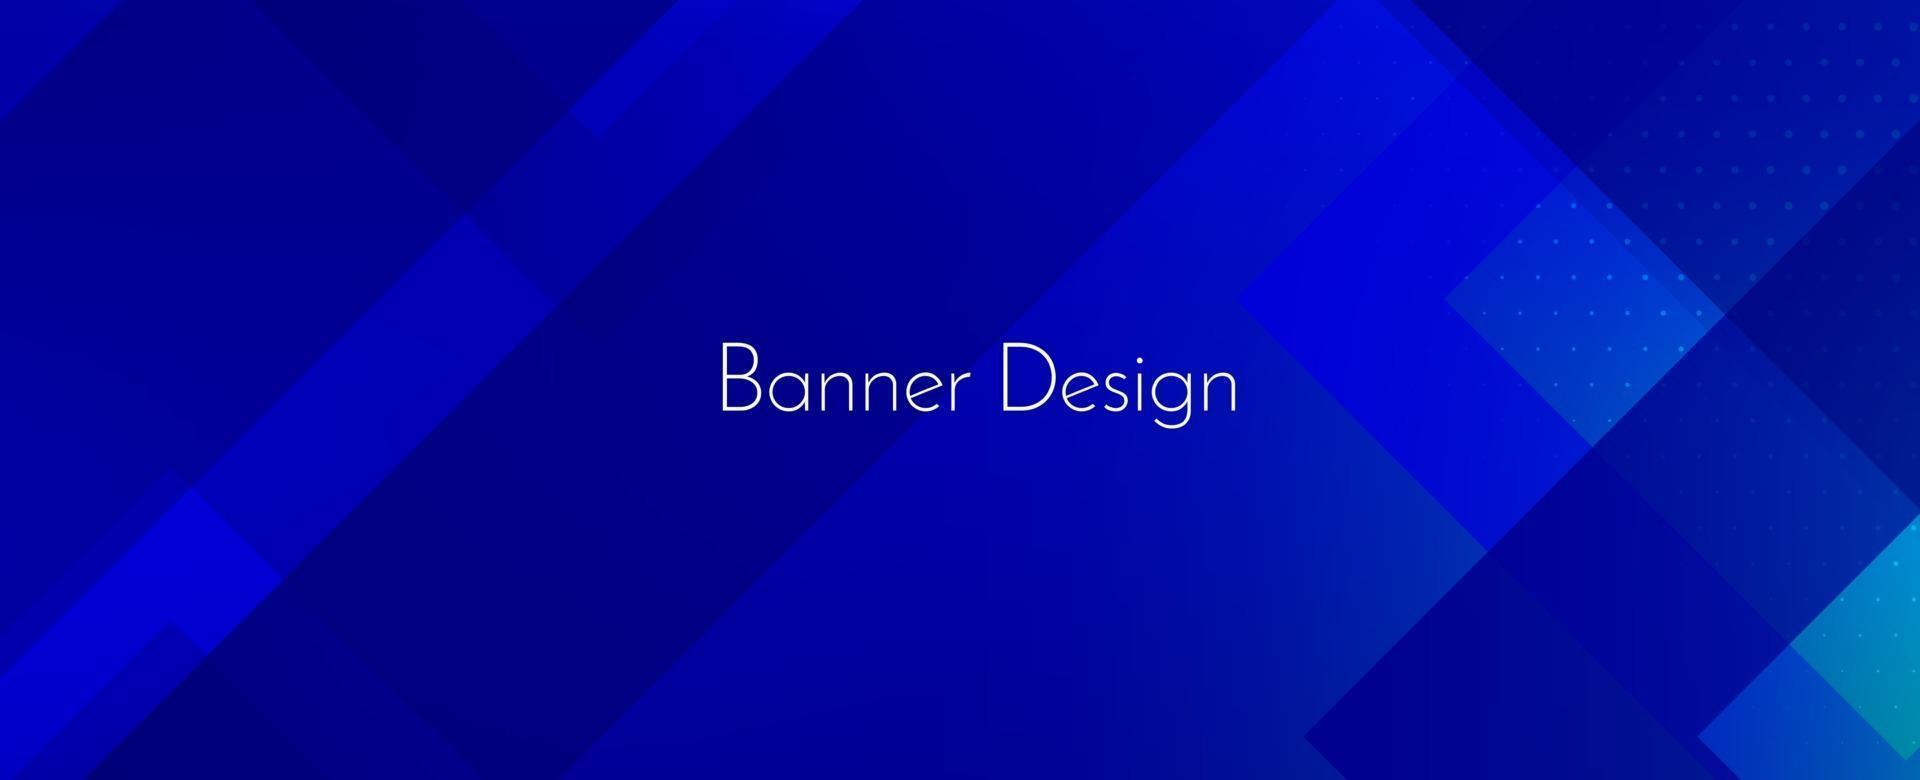 fond de conception abstraite géométrique bleu décoratif bannière moderne vecteur